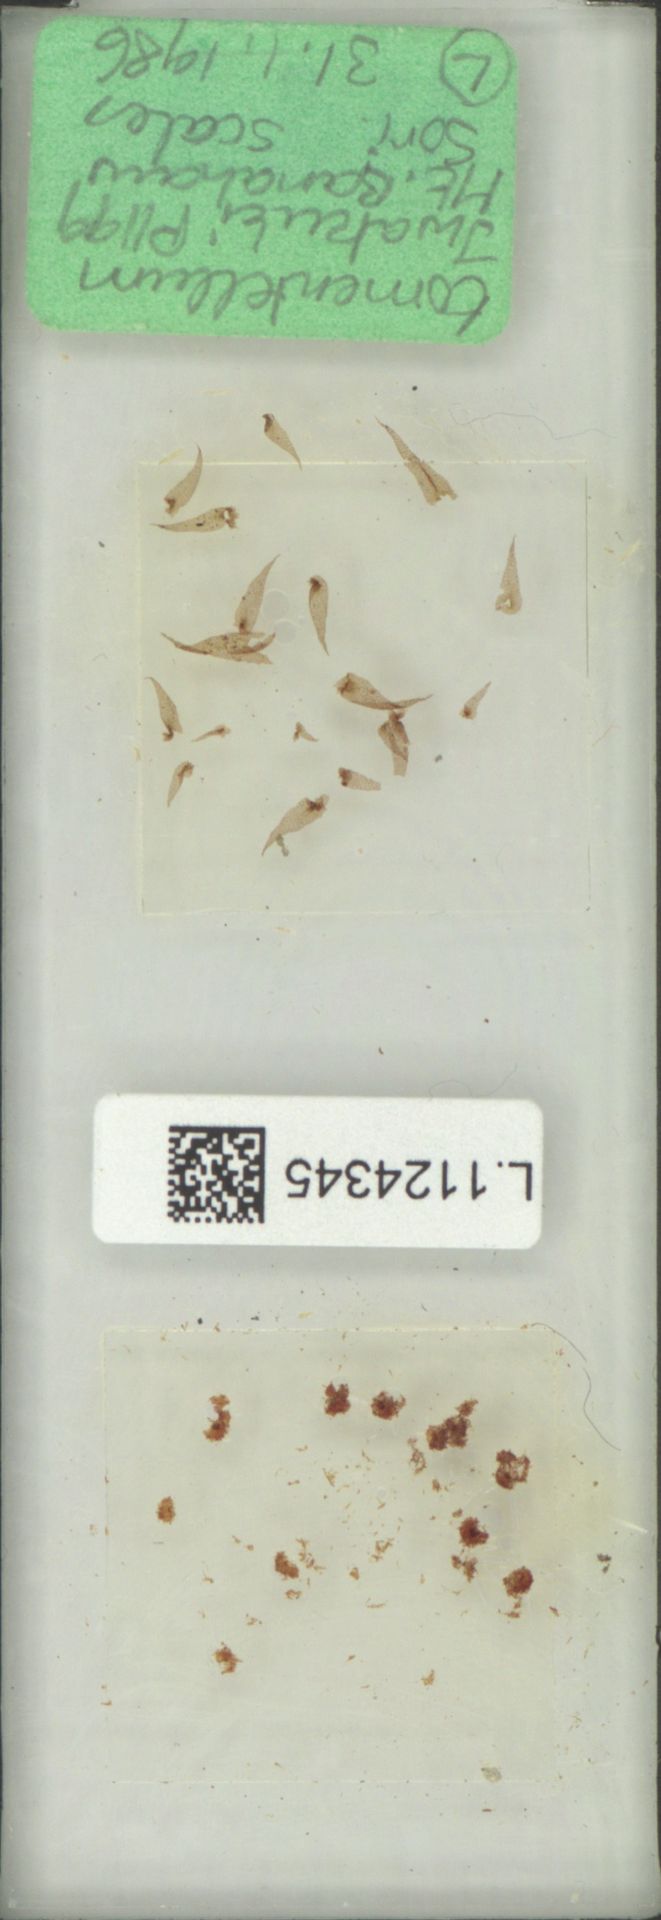 Goniophlebium image